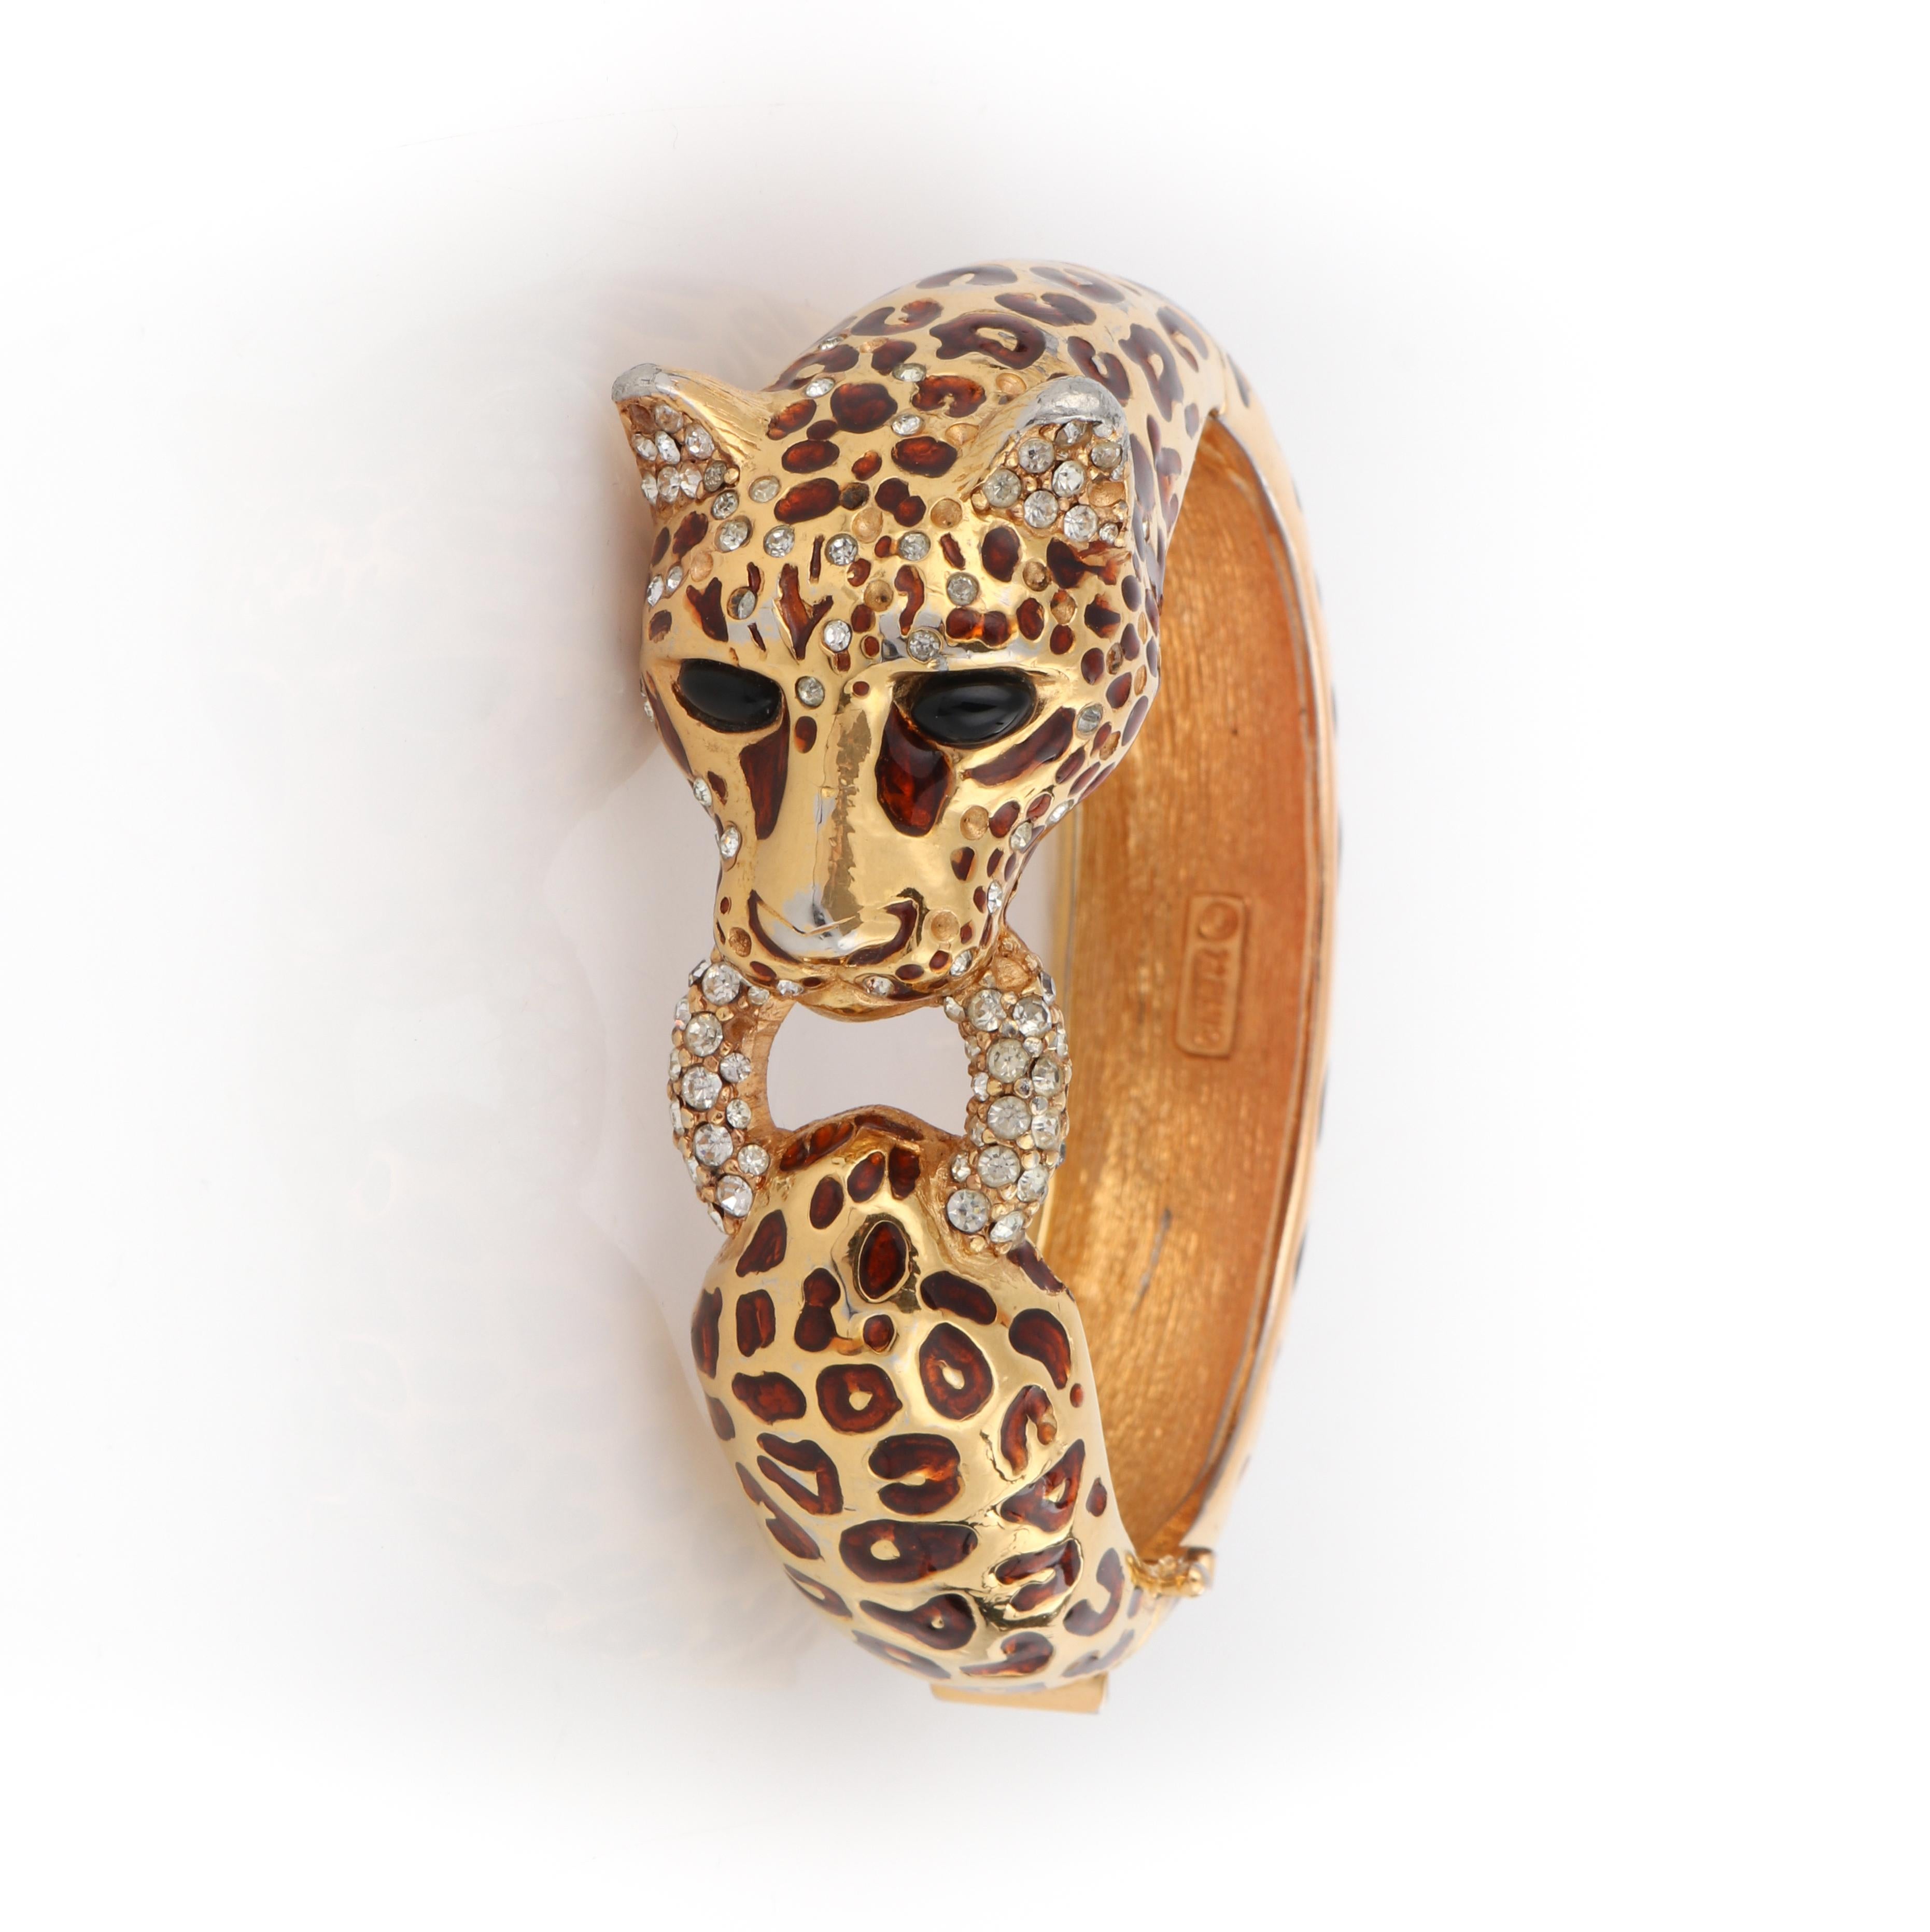 CINER c.1970s Gold Copper Enamel Swarovski Crystal Leopard Hinge Bangle Bracelet
 
Brand / Manufacturer: Ciner 
Circa: 1970s 
Style: Bangle bracelet 
Color(s): Shades of gold, copper, black
Unmarked Material (feel of): Body: Gold Plated Metal;